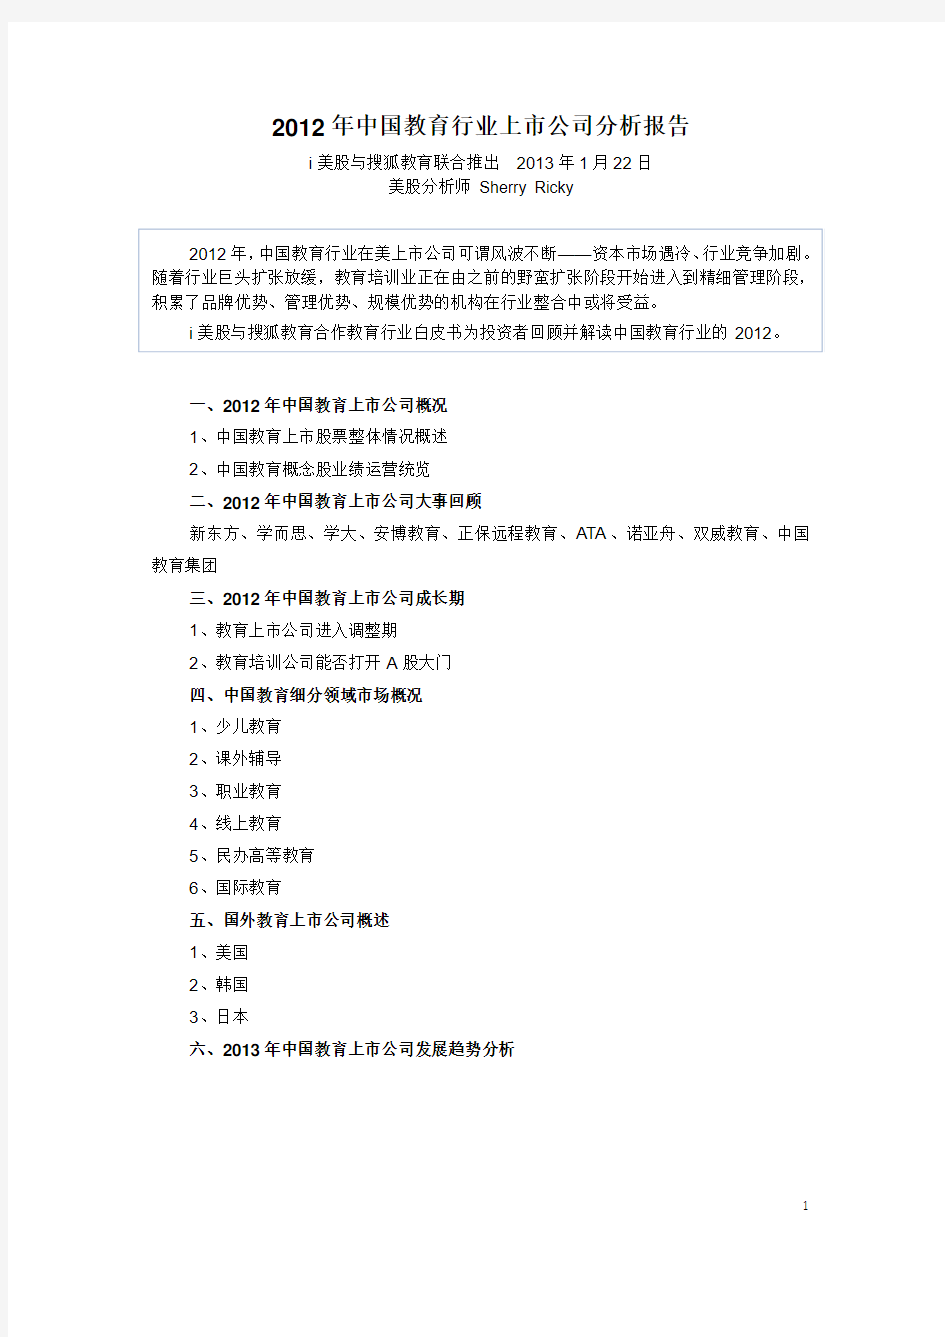 2012年中国教育行业上市公司分析报告(i美股联合搜狐教育联合推出)